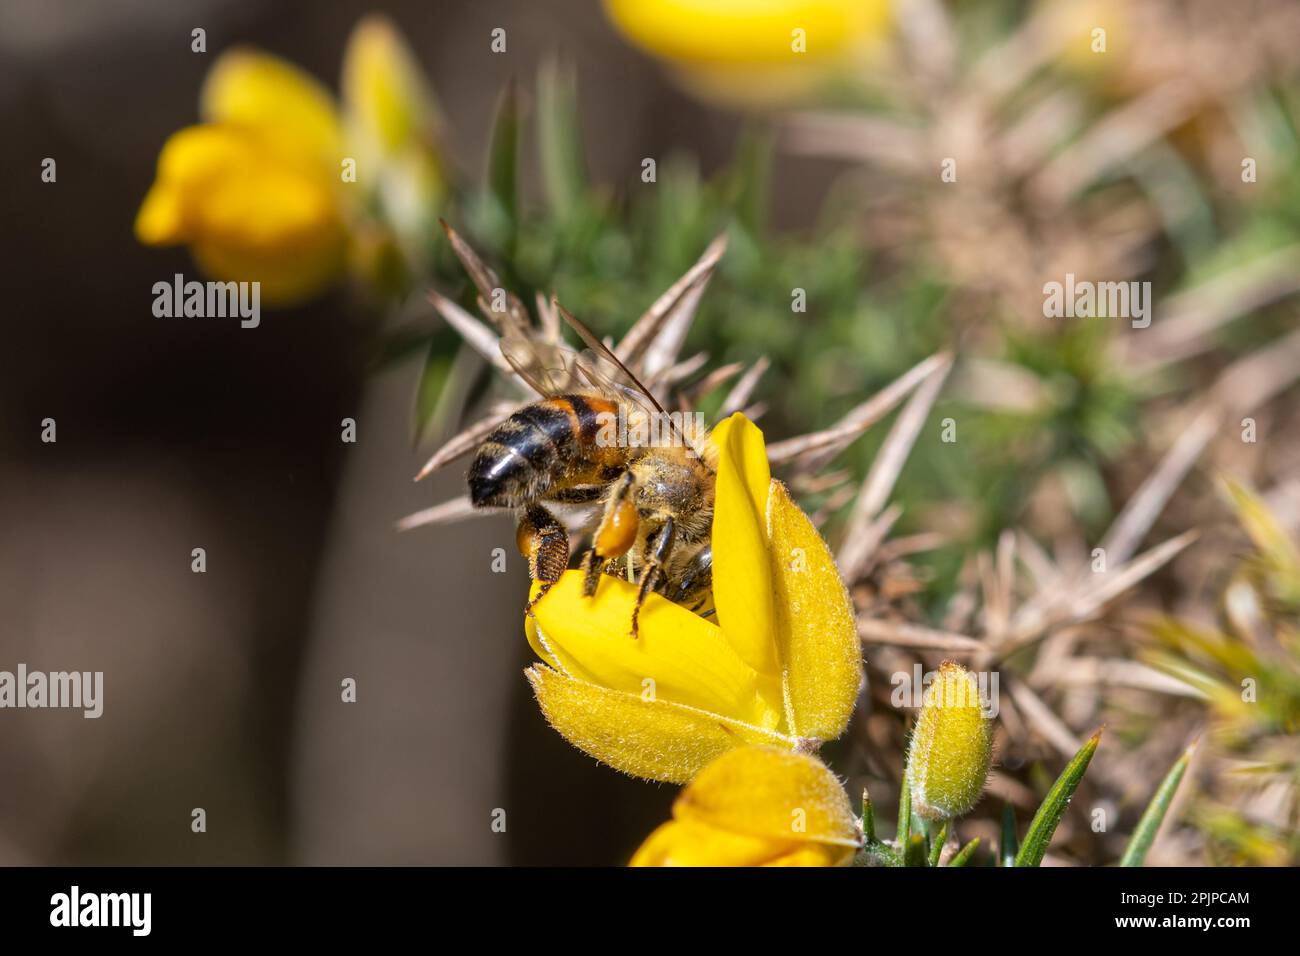 Westliche Honigbiene (APIs mellifera, auch als europäische Honigbiene bezeichnet), die im Frühling in Surrey, England, Nektar und Pollen aus Gänseblümchen sammelt Stockfoto